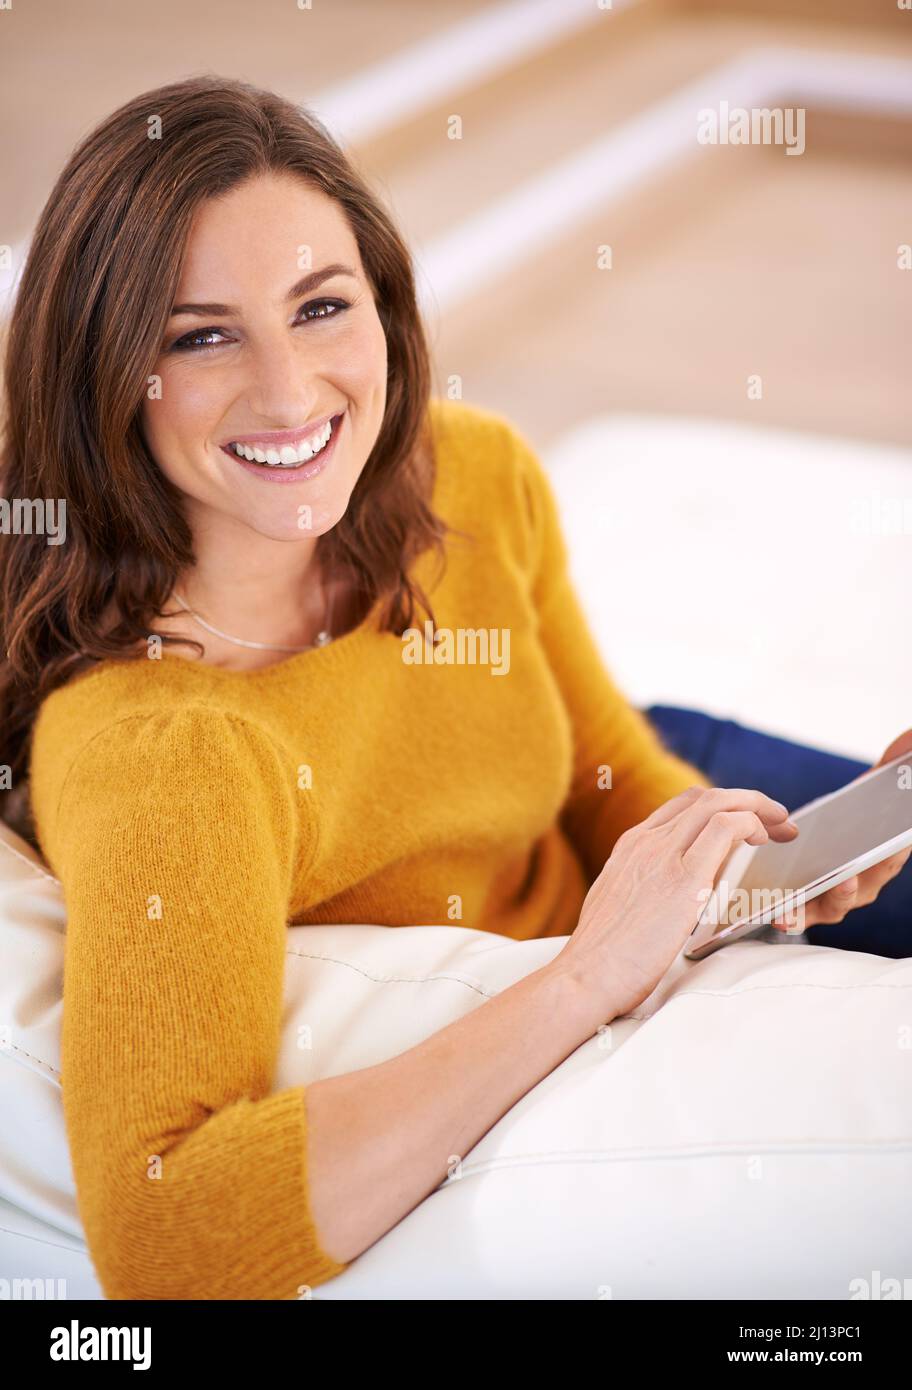 Auf ihrem digitalen Tablet in ein gutes Buch zu kommen. Aufnahme einer wunderschönen jungen Frau mit einem digitalen Tablet in Innenräumen. Stockfoto